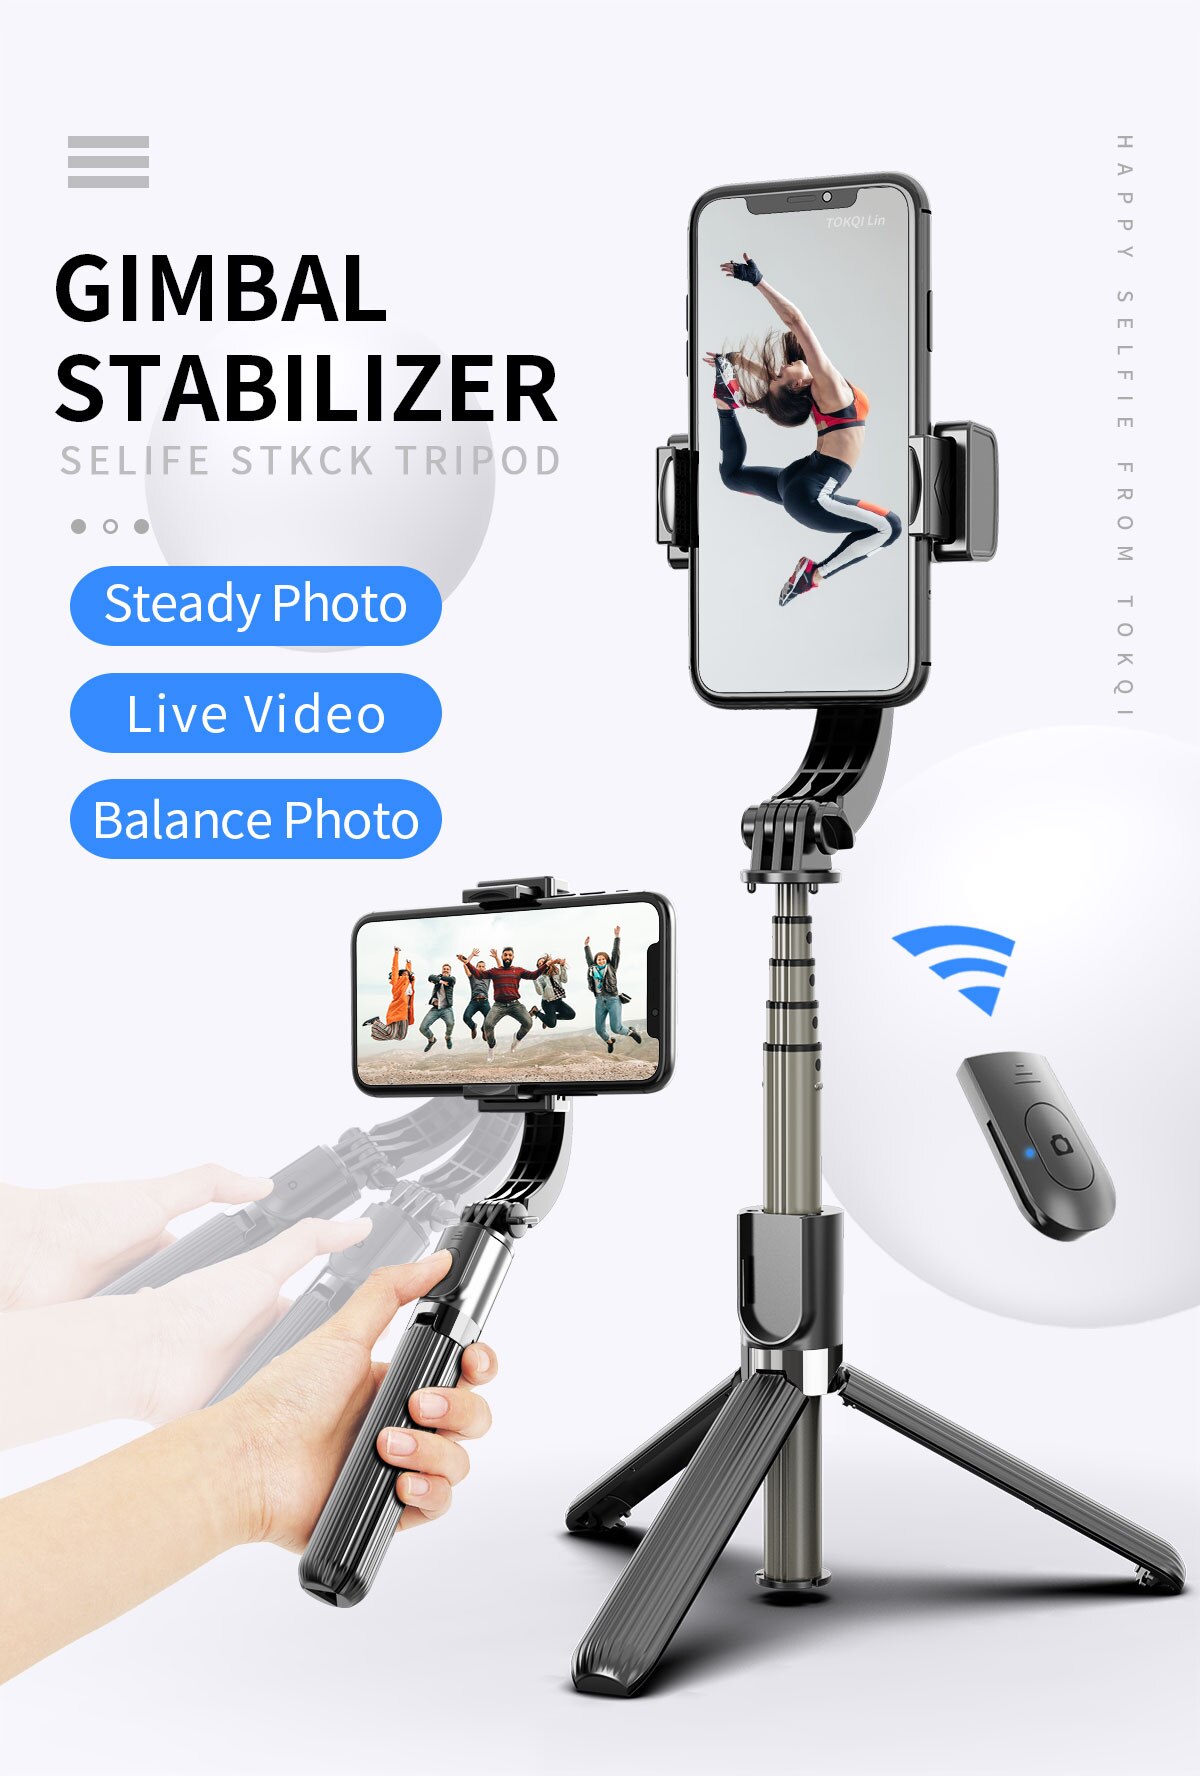 Handheld Gimbal Stabilisatoren Selfie Stock Stativ Erweiterbar Anti-schütteln praktisch Stock Stativ Mit Bluetooth Fernbedienung